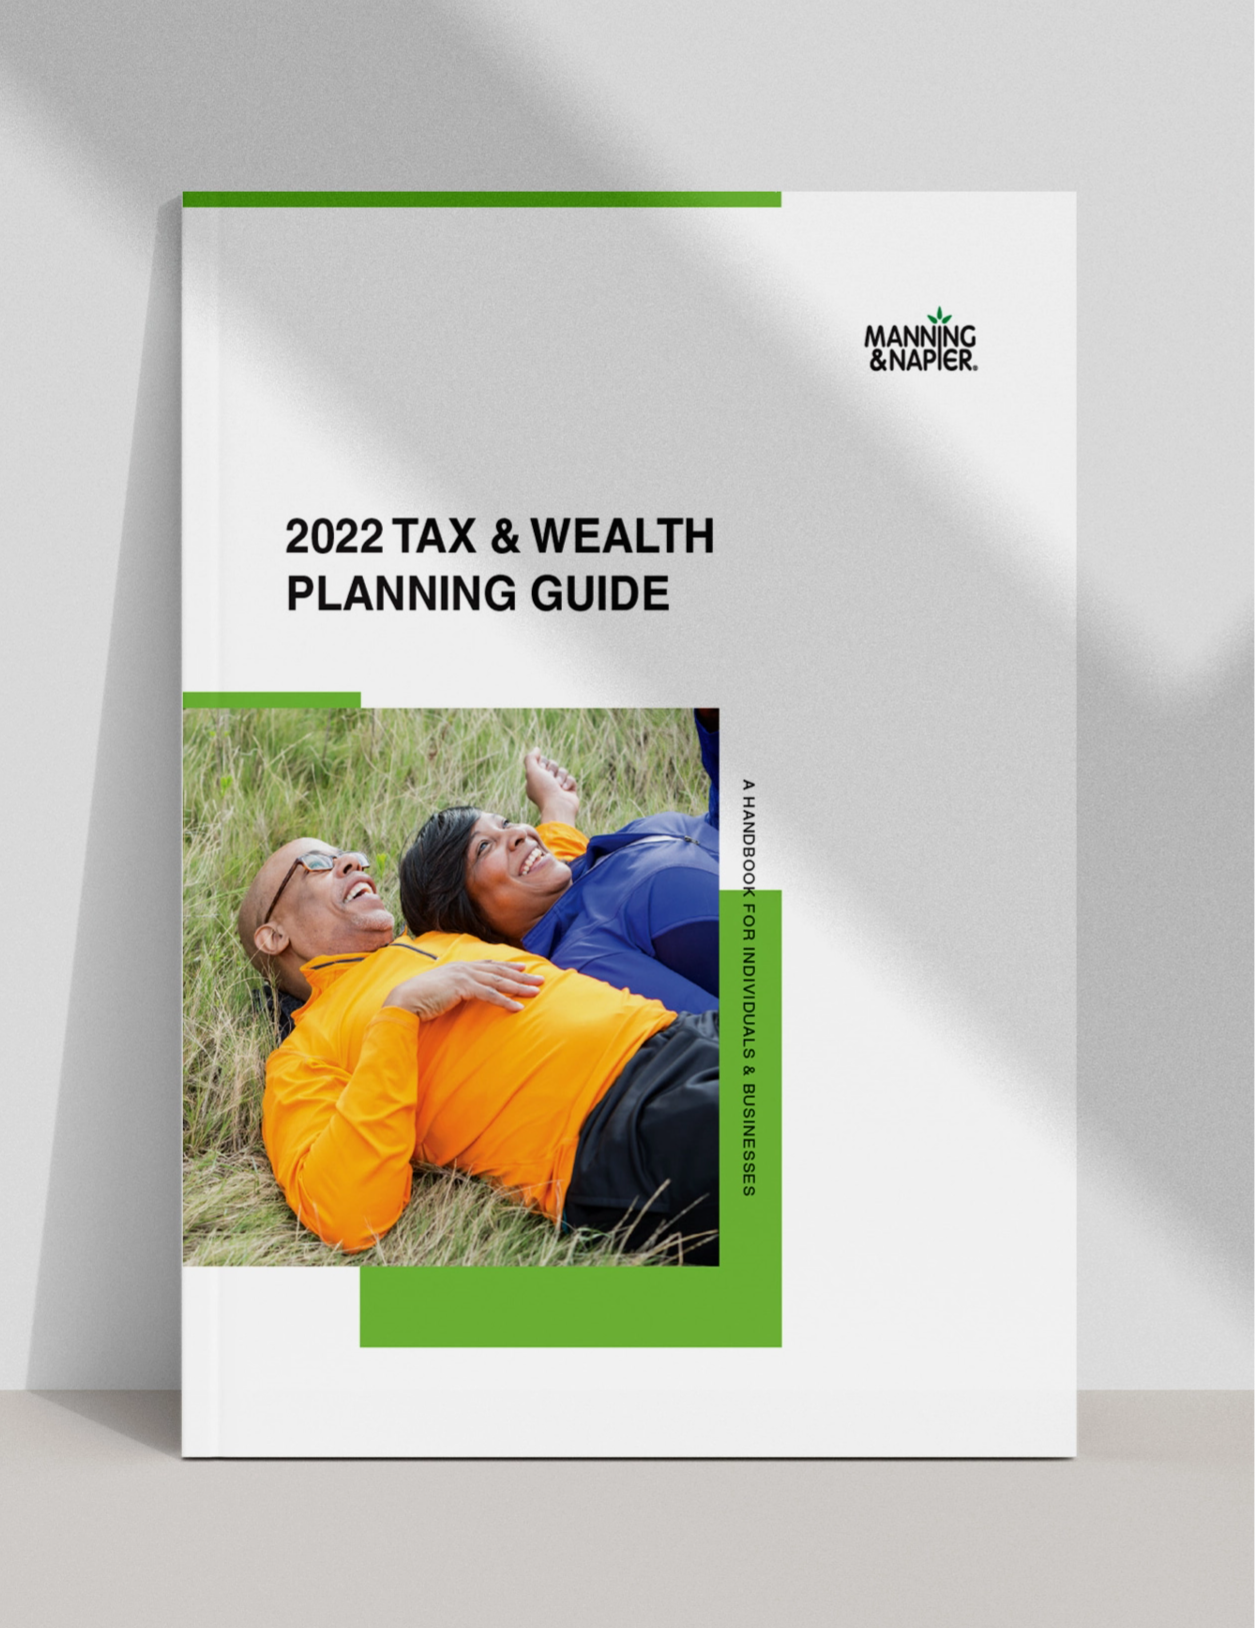 wm-tax-guide-2022-mockup-lp-header